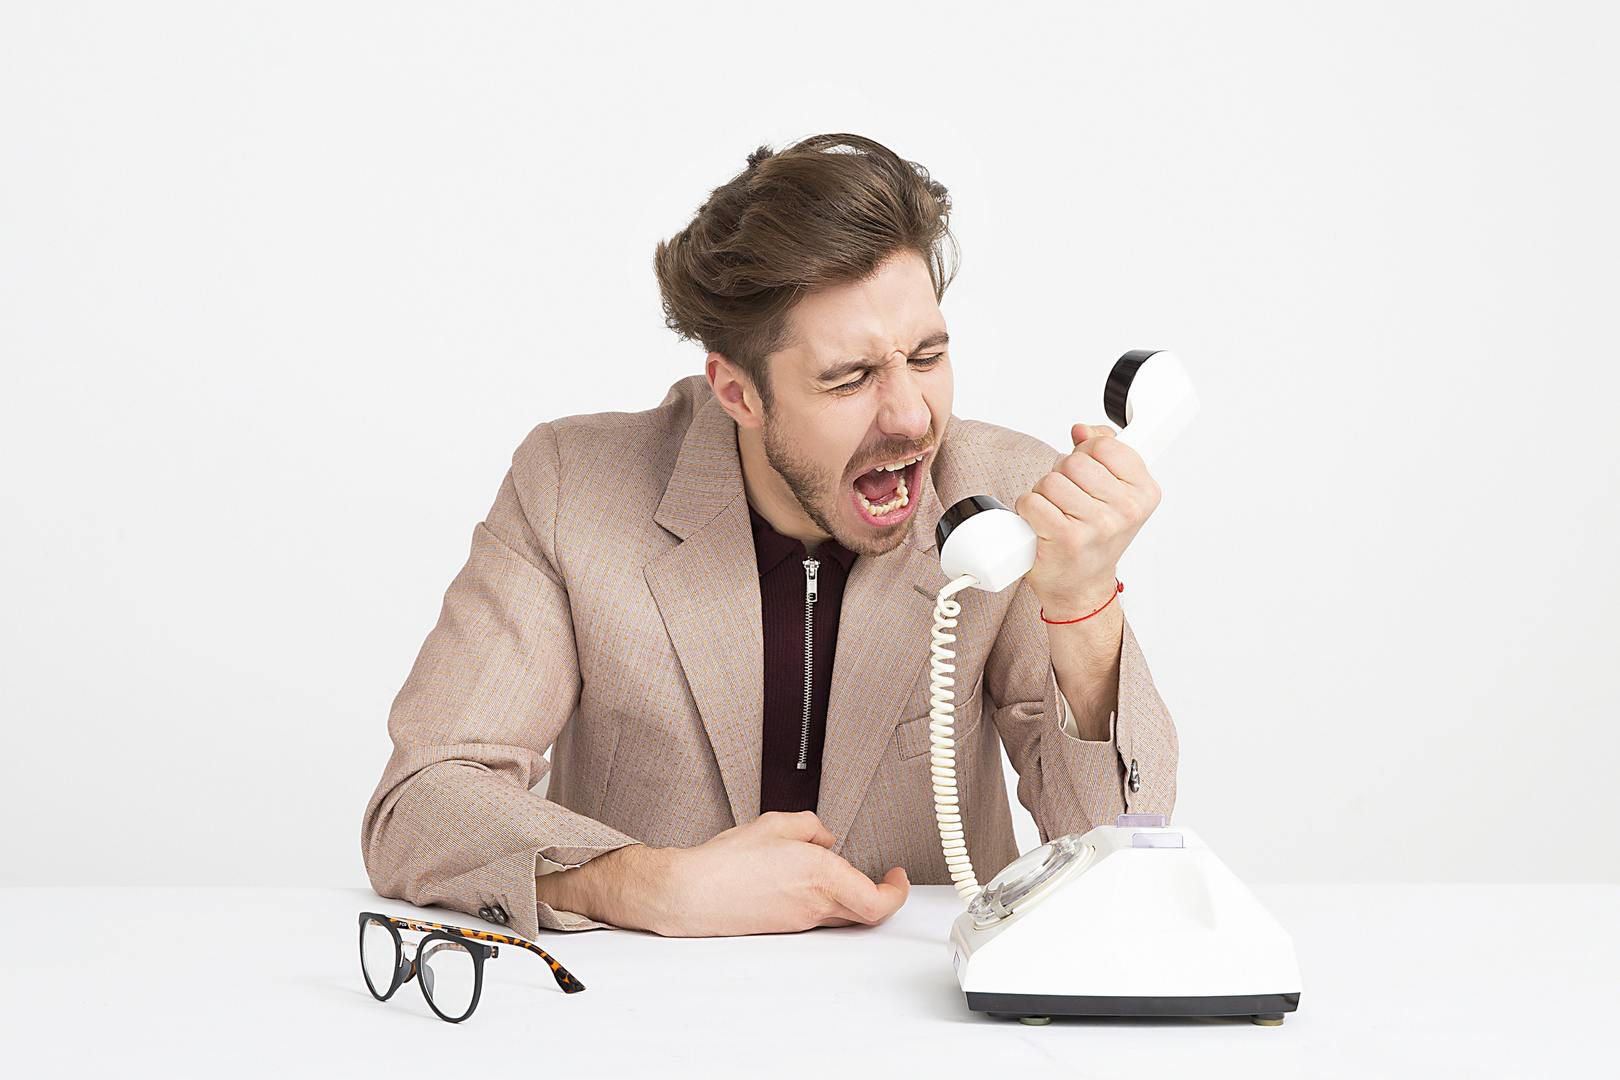 Las llamadas telefónicas en las que se ofrece publicidad son causa de molestia (Foto: Pxhere)